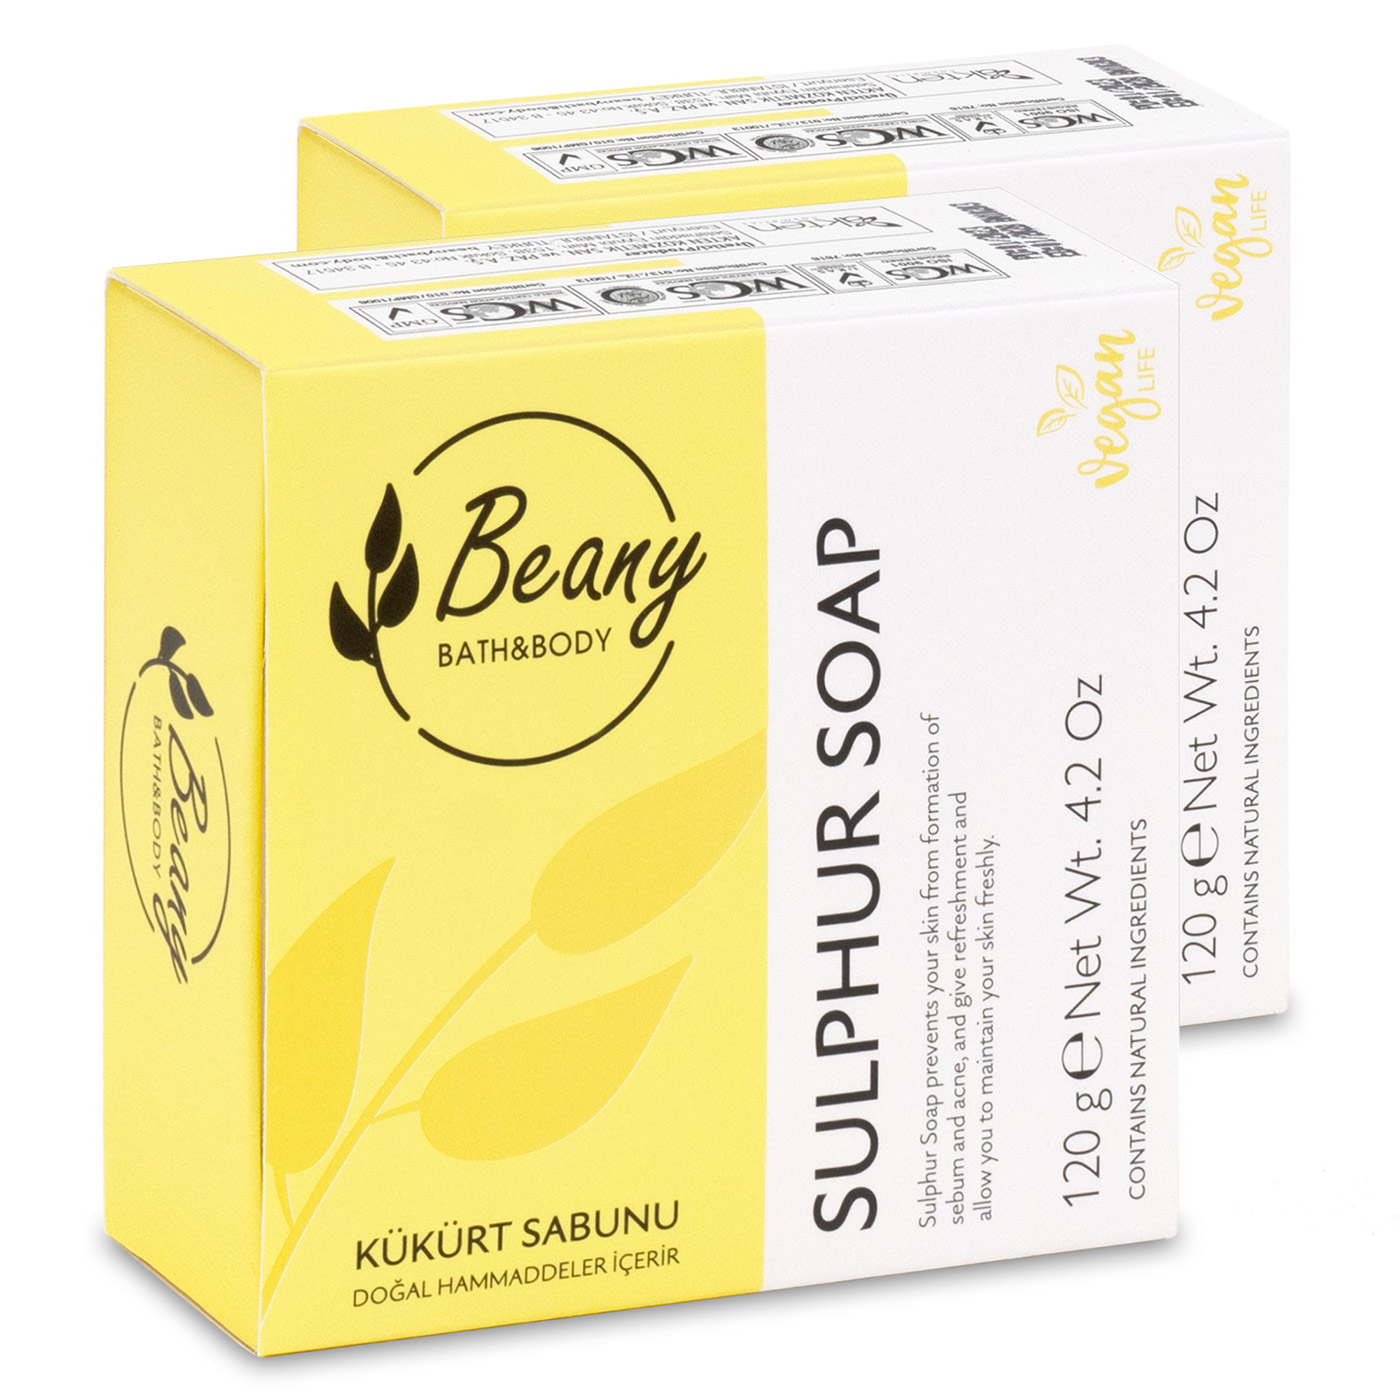 Мыло Beany твердое натуральное турецкое Sulphur Soap серное 2шт. х 120г мыло beany твердое натуральное турецкое sulphur soap серное 2шт х 120г